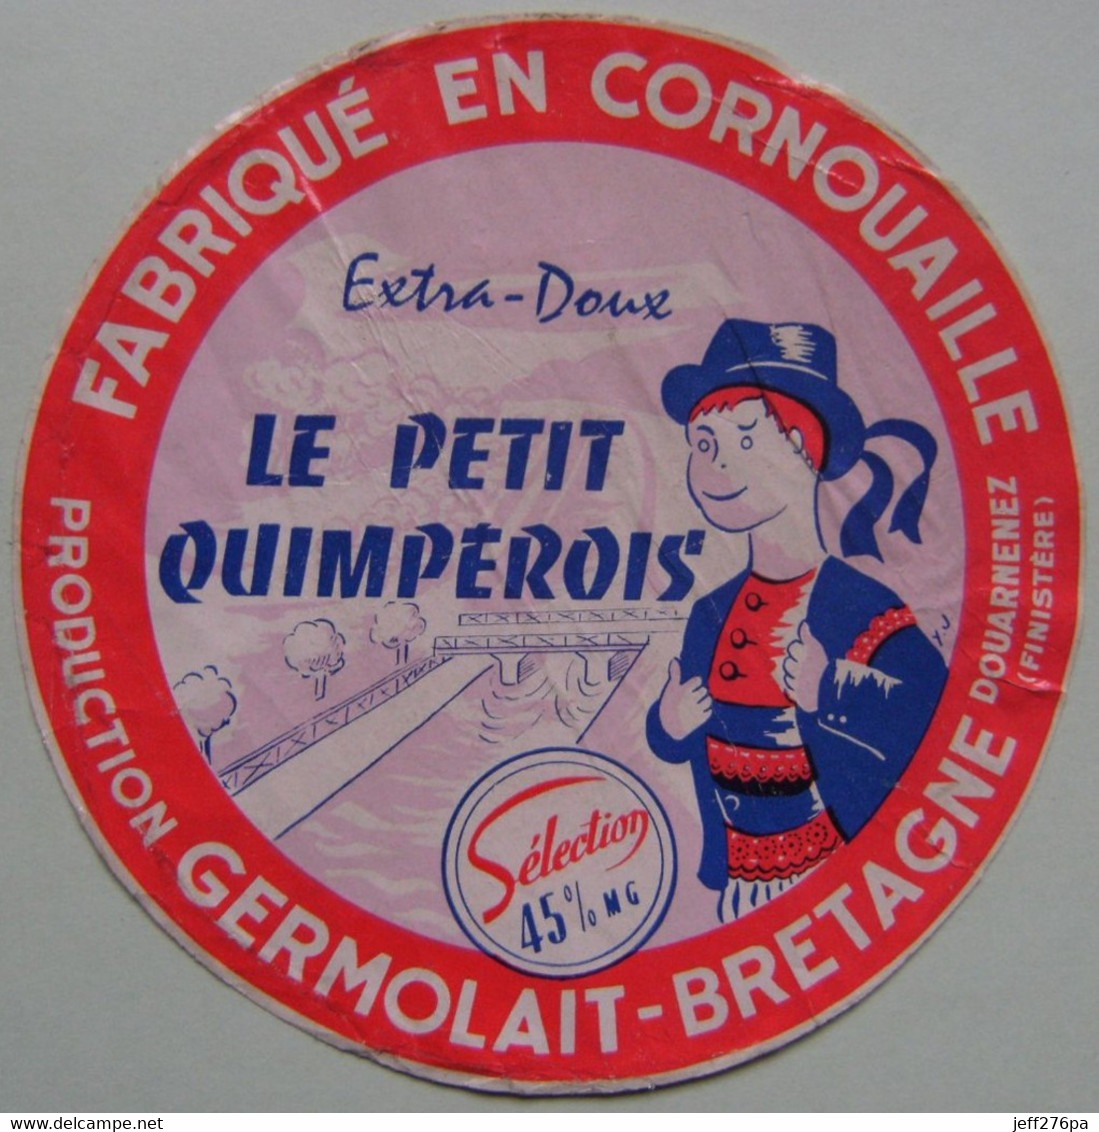 Etiquette Fromage - Le Petit Quimpérois - Fromagerie Germolait à Douarnenez 29 - Bretagne   A Voir ! - Cheese